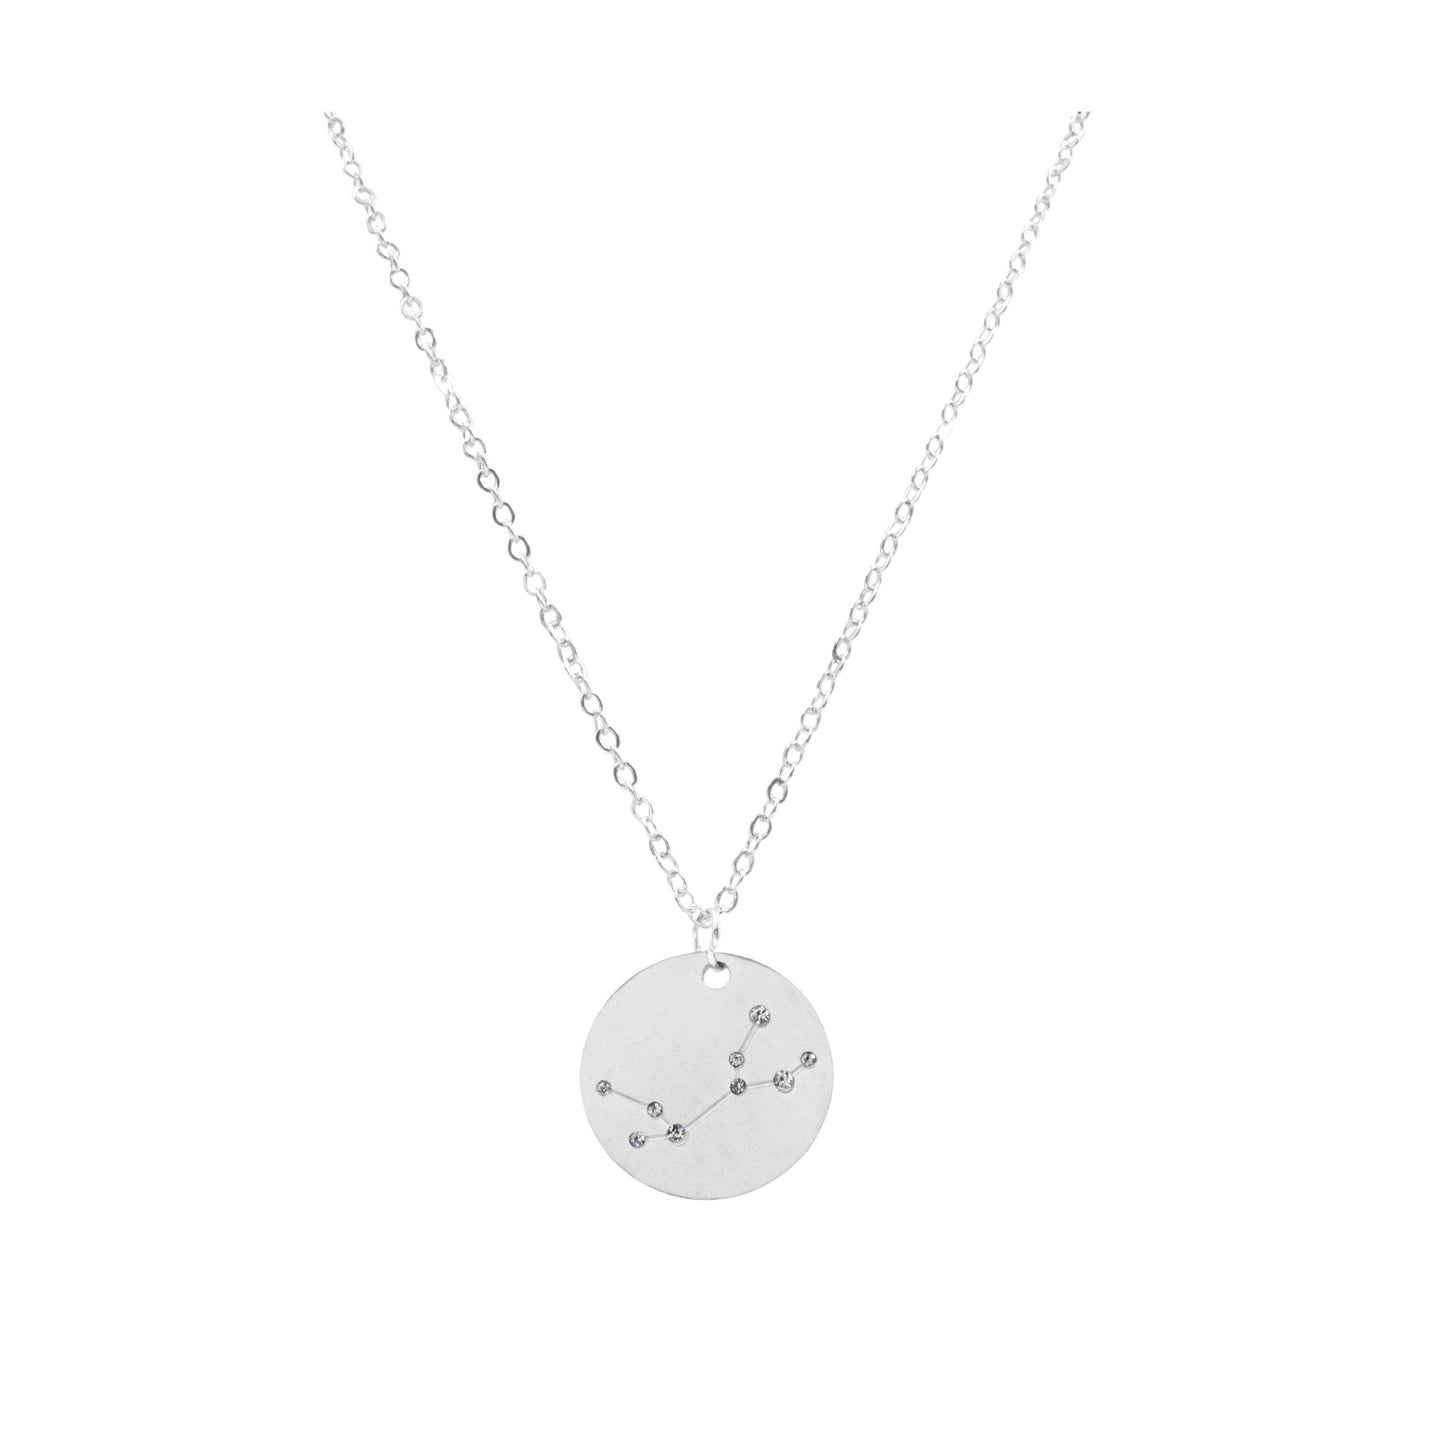 Zodiac Collection - Silver Virgo Necklace (Aug 23 - Sep 22)